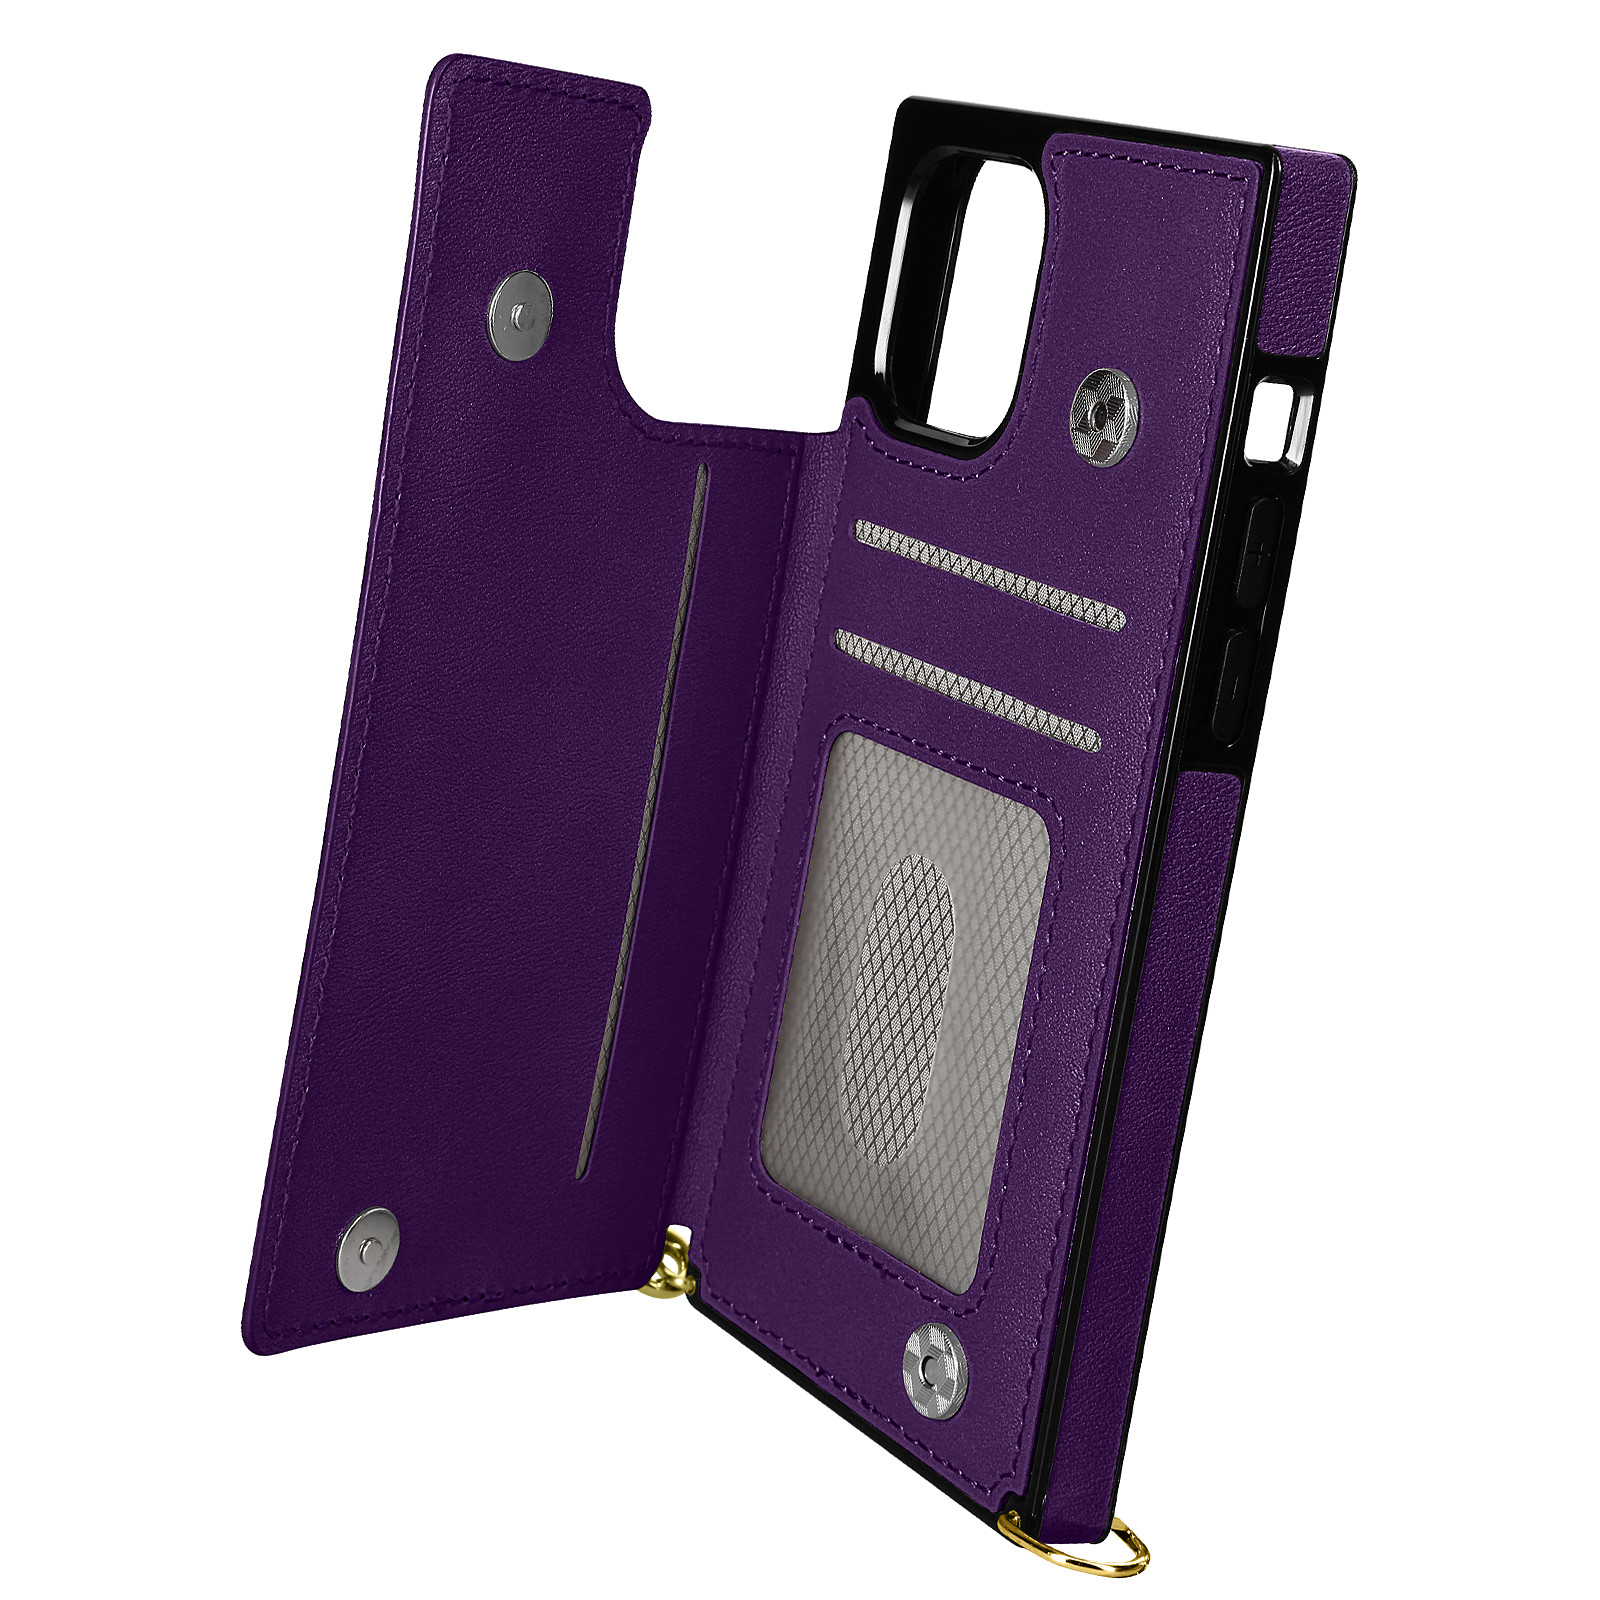 Avizar Coque Cordon pour iPhone 11 avec Porte-cartes Support Video Lanière violet fonce - Coque telephone Avizar